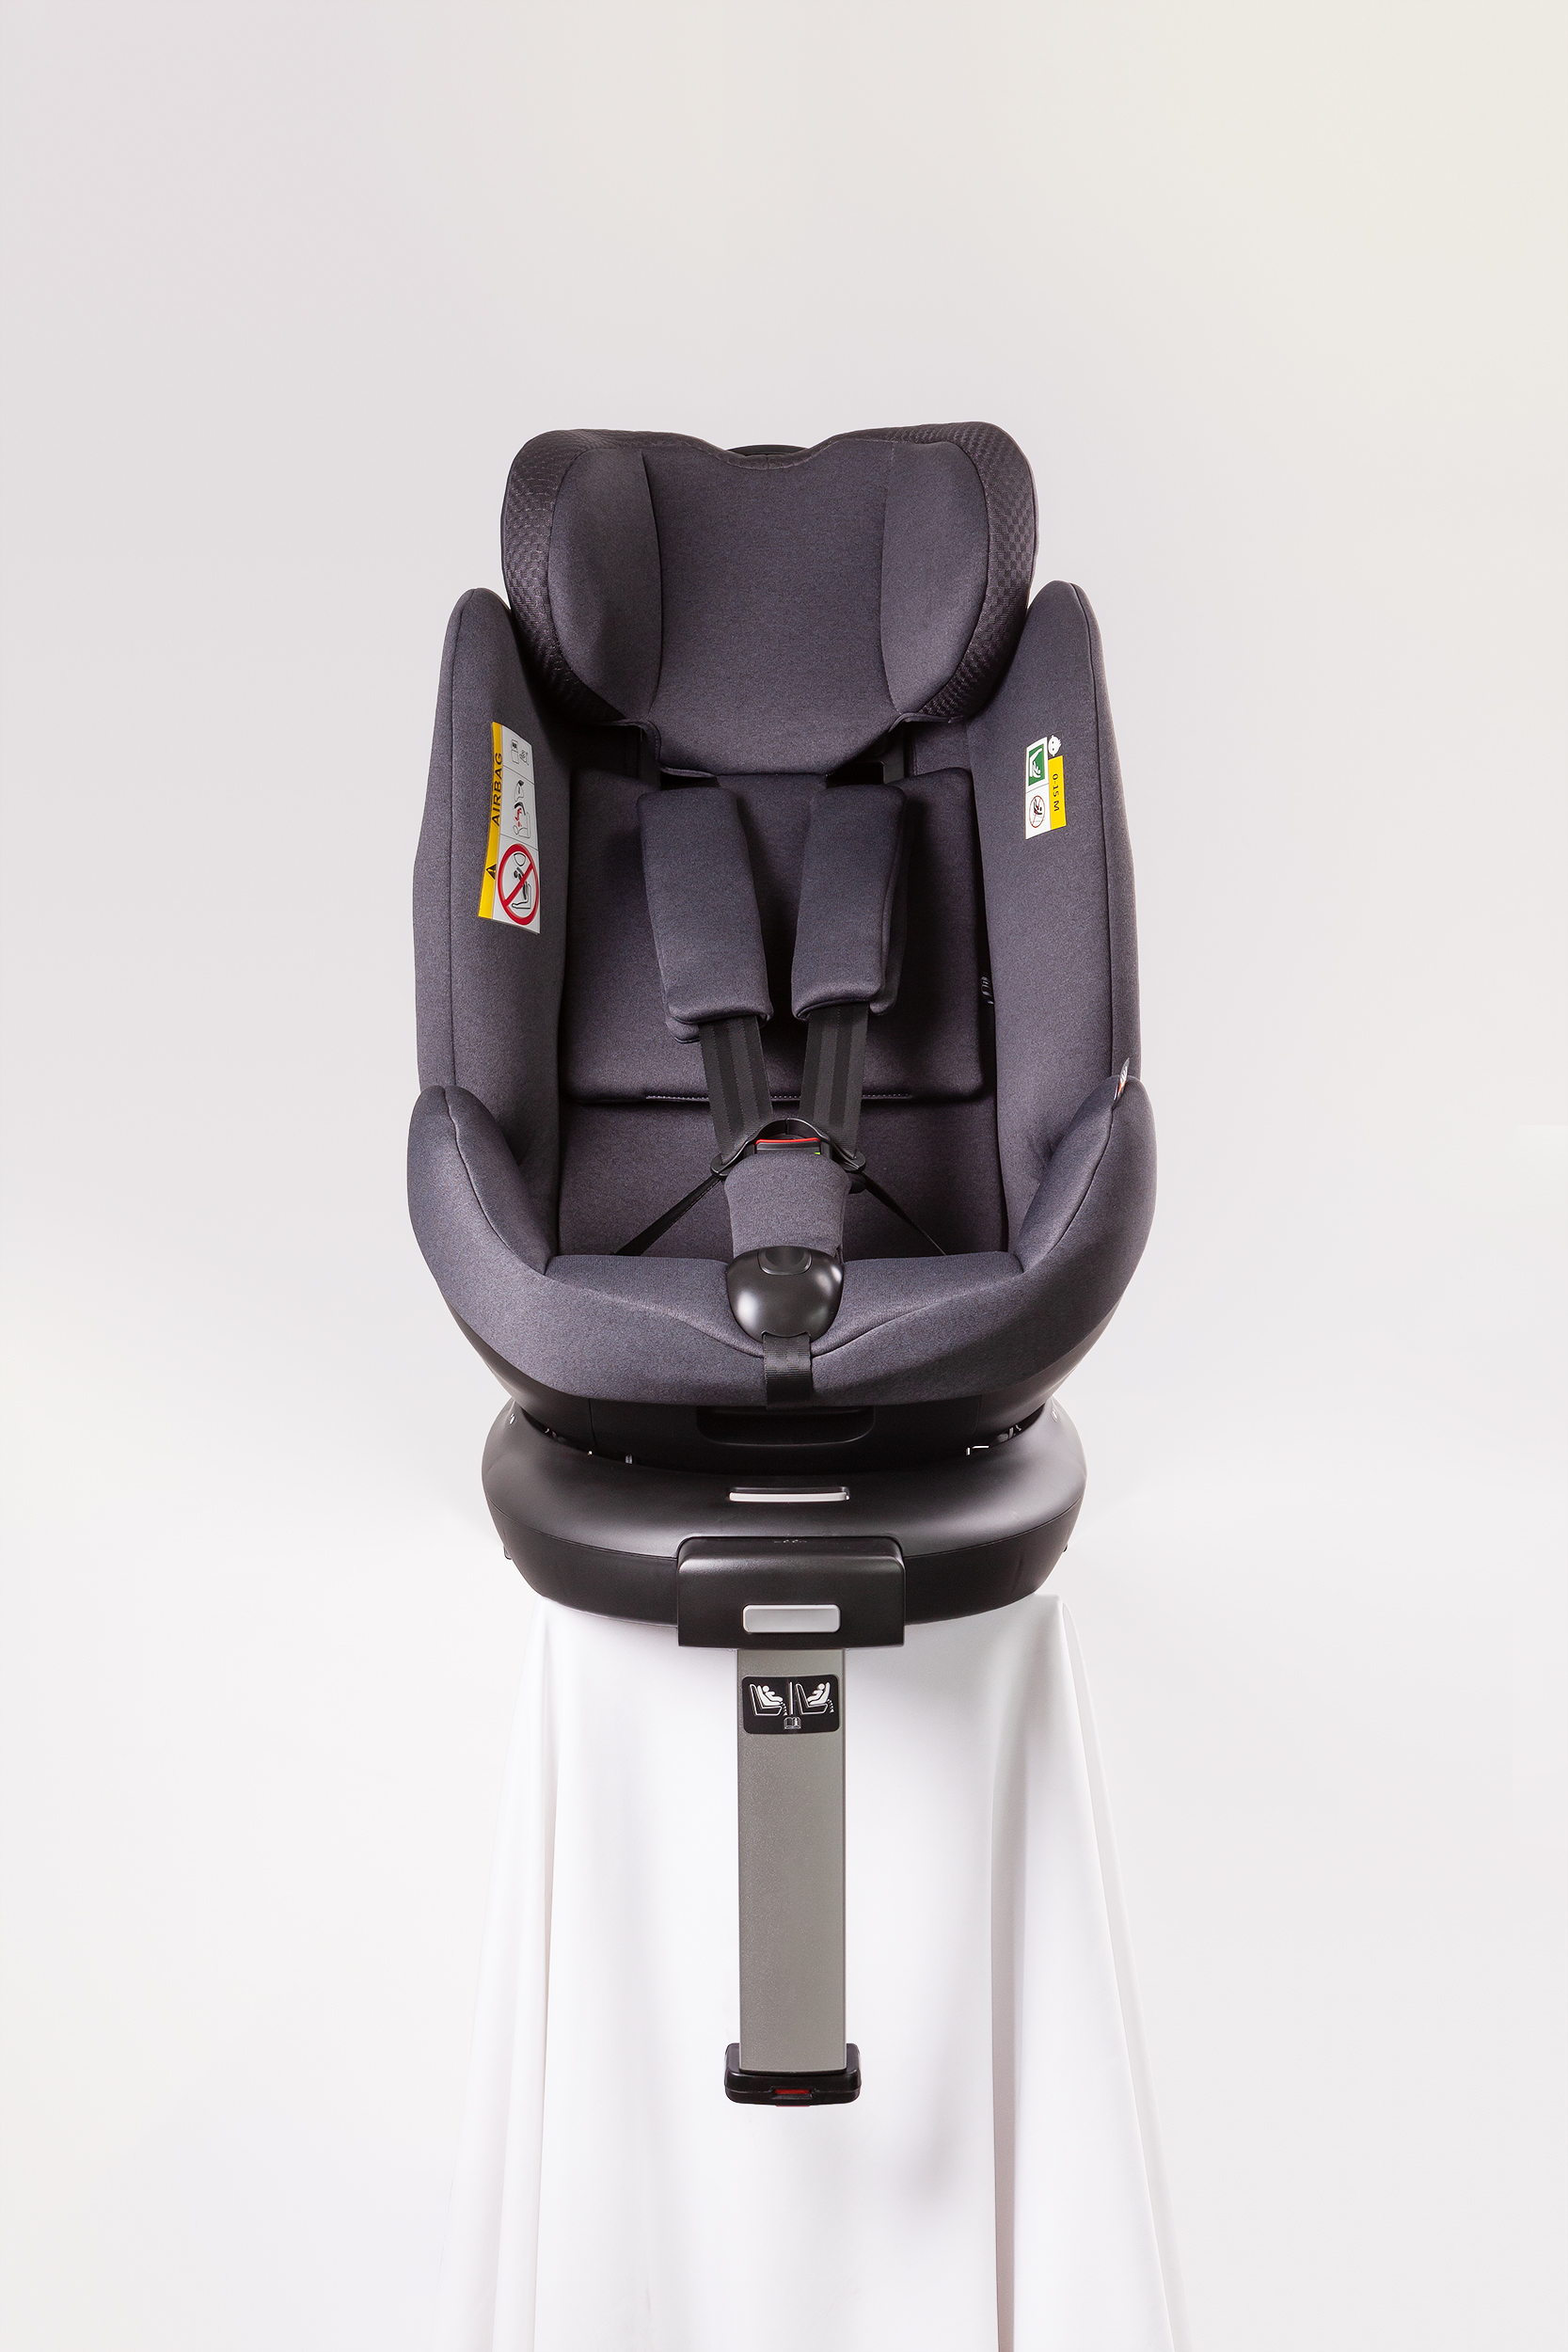 Brauner, um 360 Grad drehbarer Kinderautositz für 1-Jährige